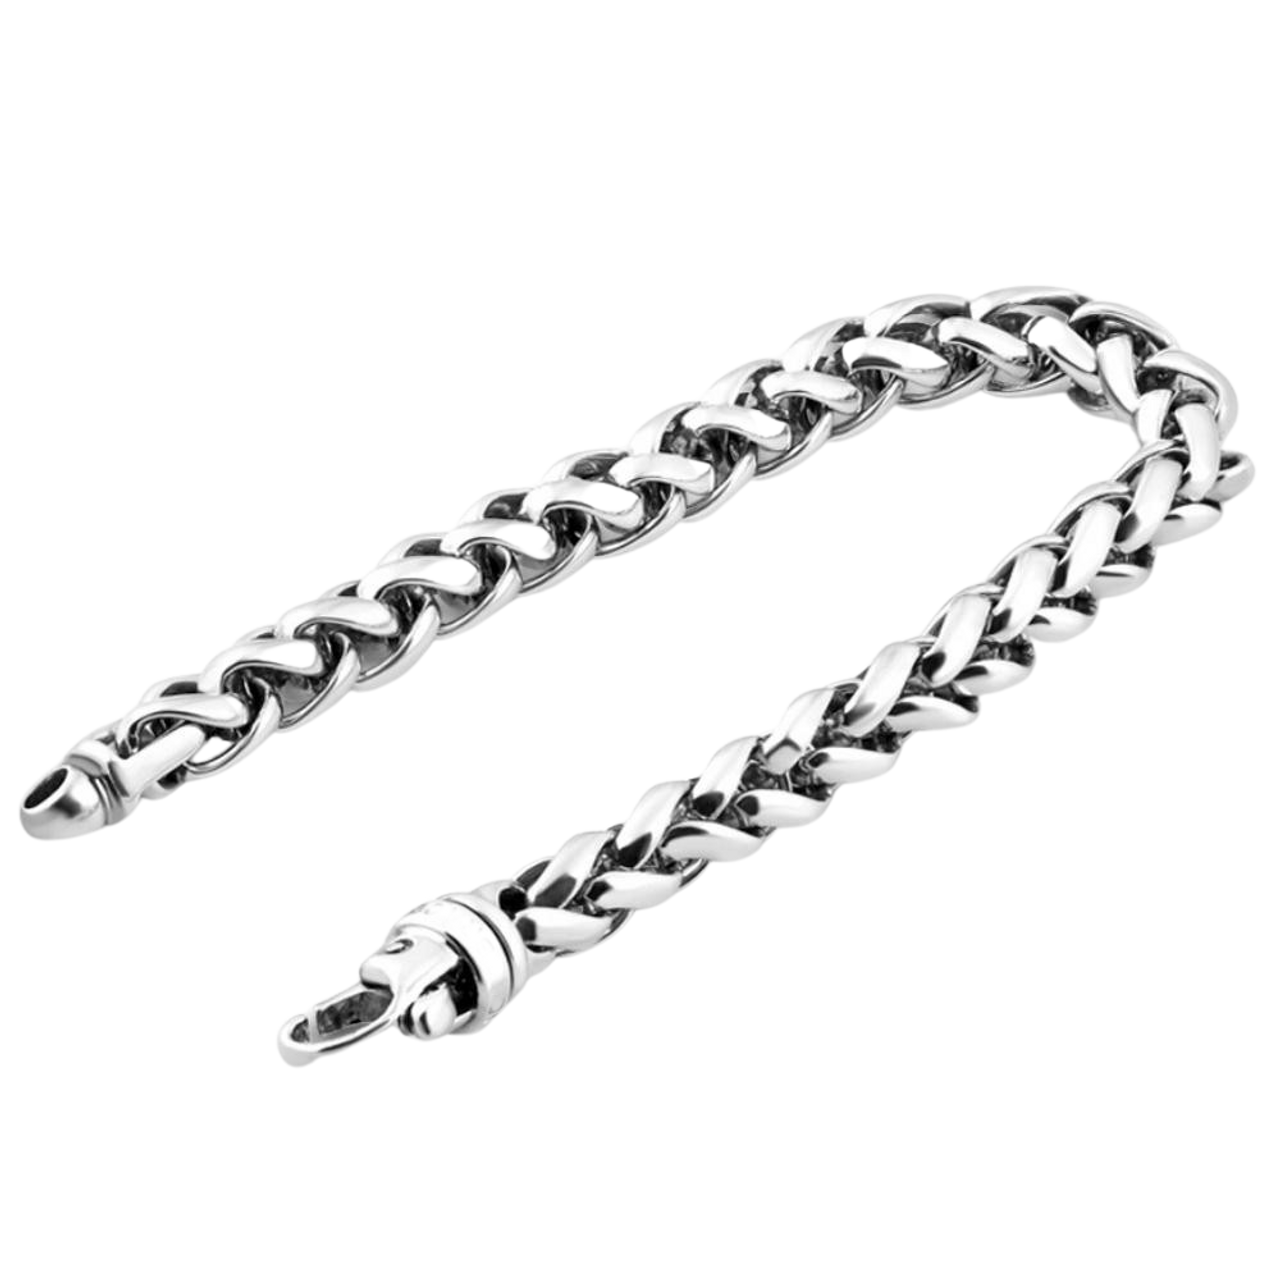 Wheat Chain Clasp Bracelet - Boutique 23